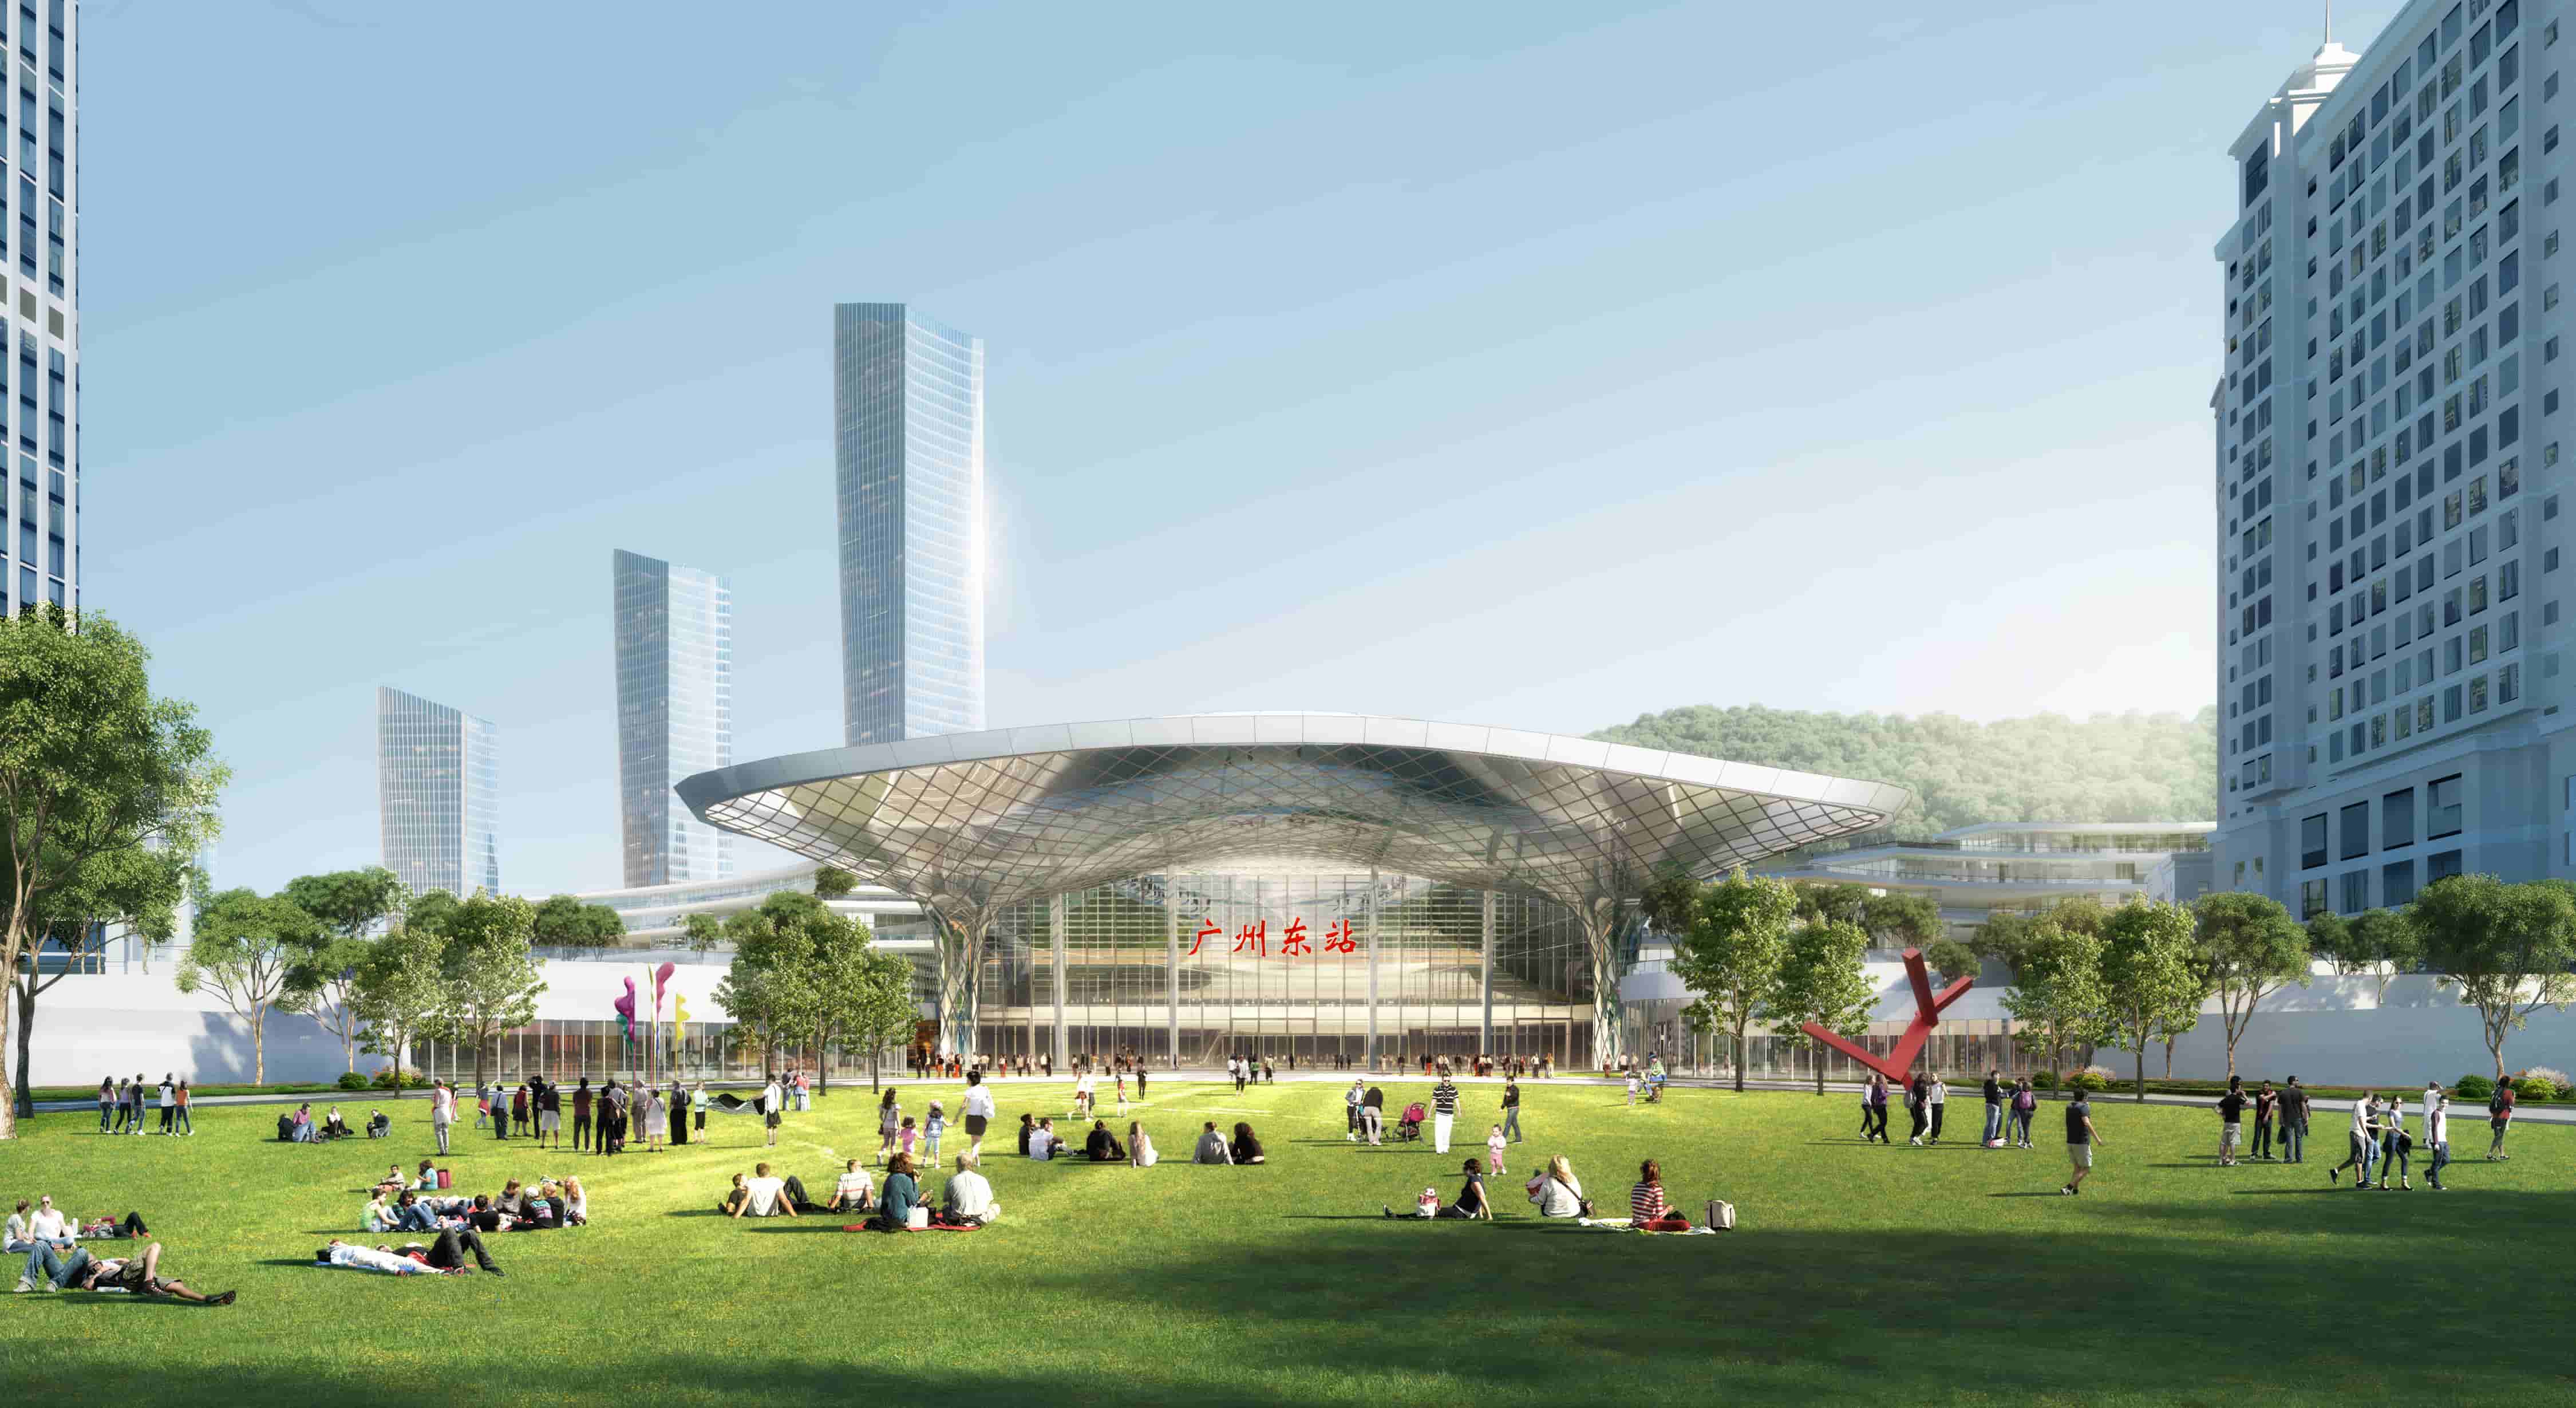 枢纽绿洲 脉动羊城  —— 广州市设计院联合体在广州东站地区城市景观及环境设计国际竞赛中一举夺魁